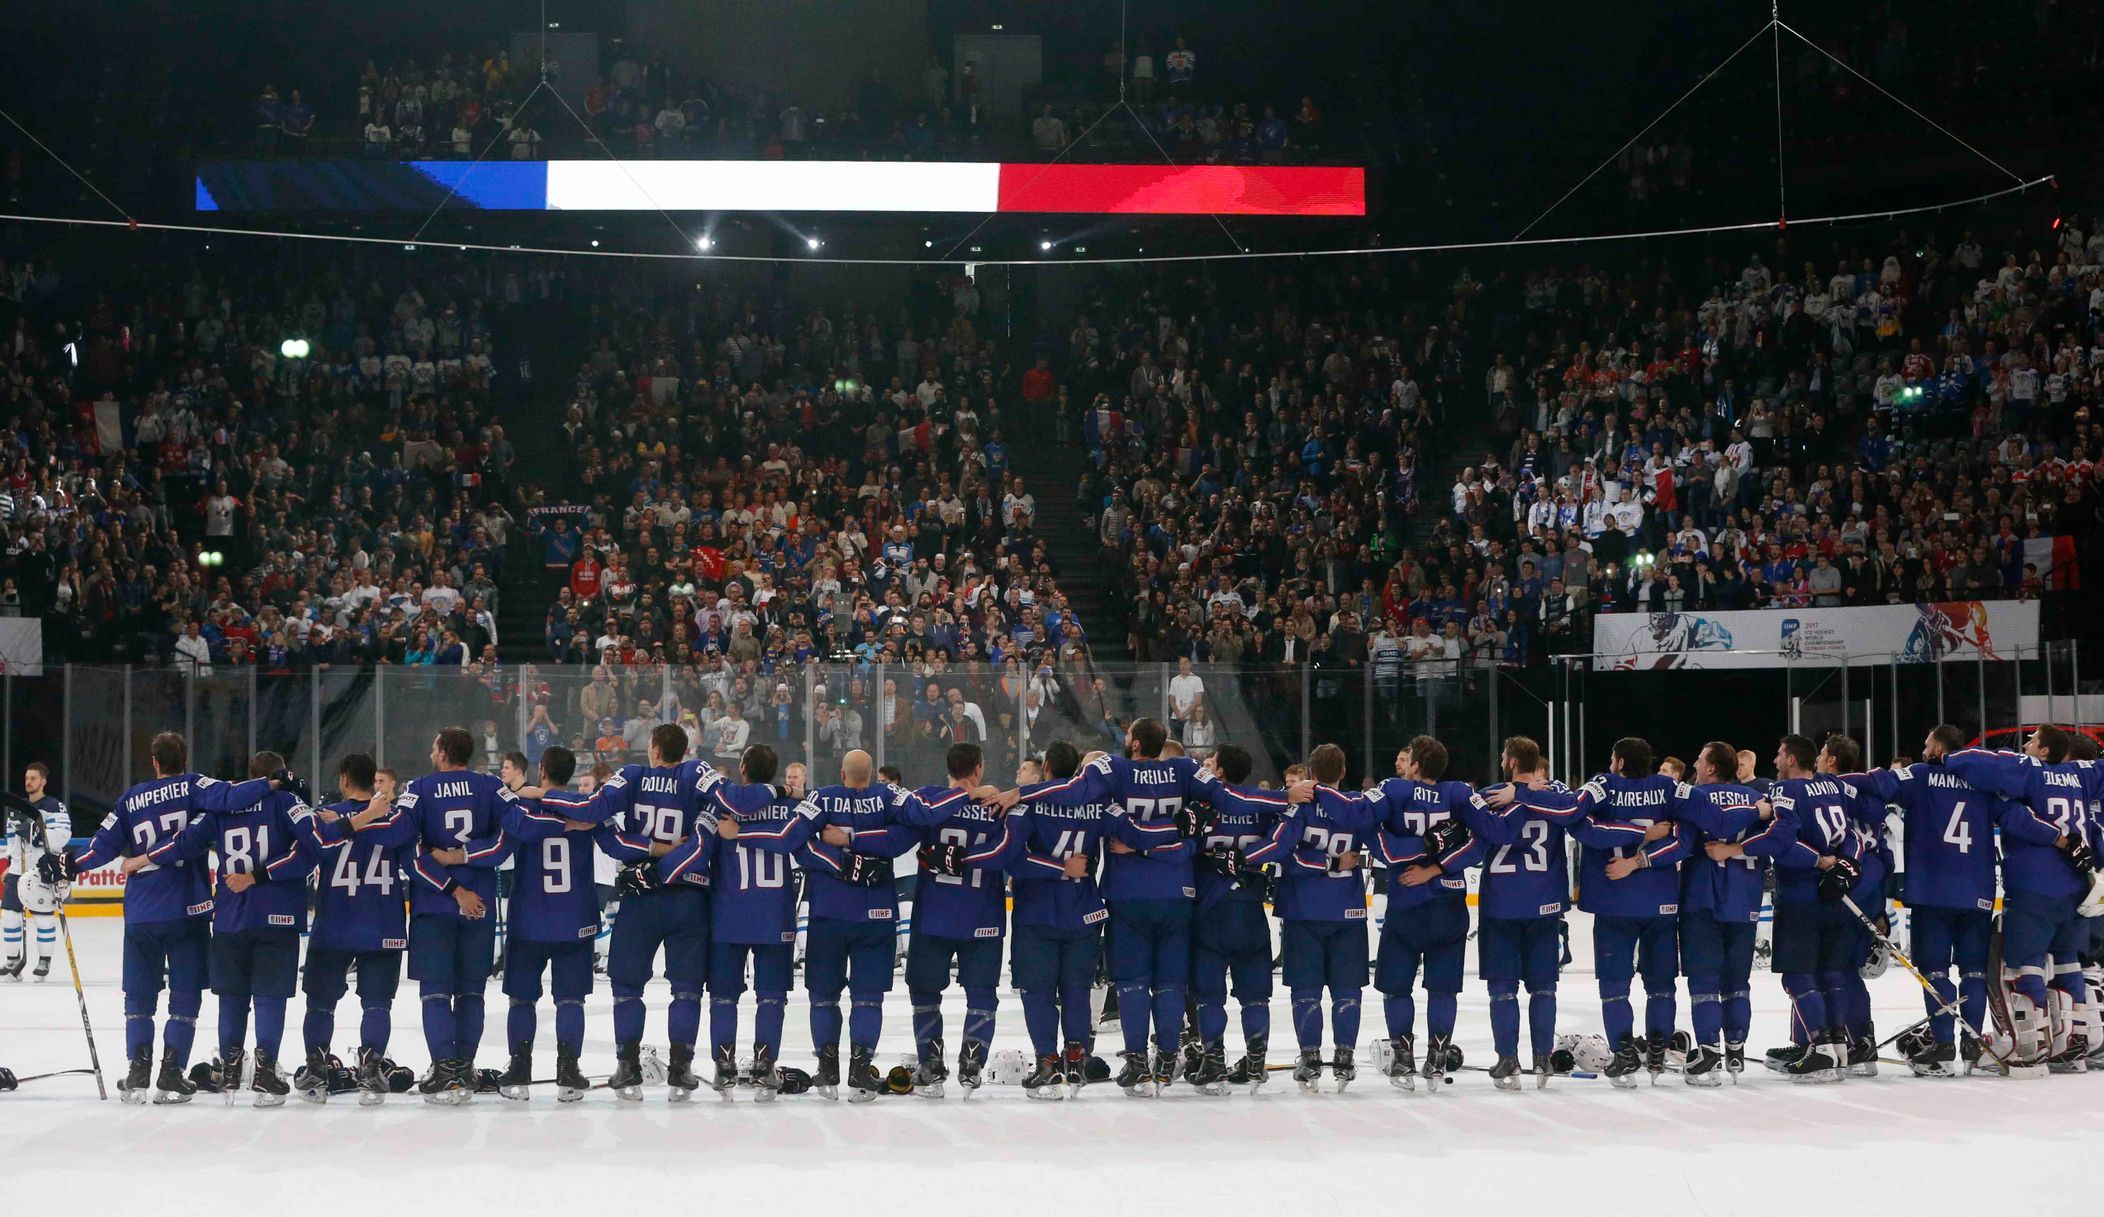 Une histoire de hockey comme Paris n’en a jamais connu.  La France a un nouveau héros sportif